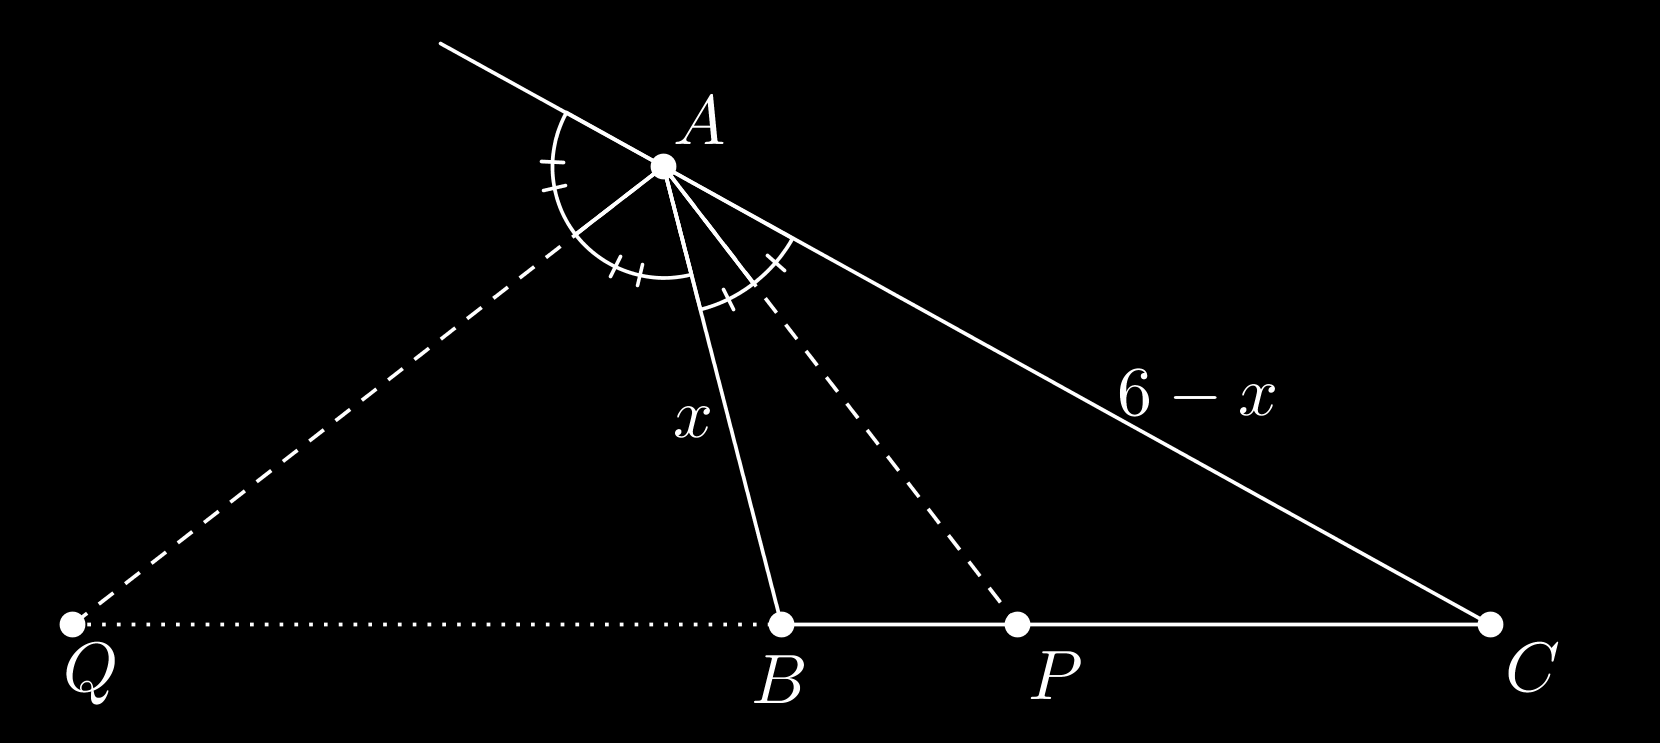 Calcule as medidas dos lados AB e AC do triângulo. Sejam P e Q os pés das bissetrizes interna e externa, respectivamente, partindo de A. Denotando x AB, temos AC P AB BC 9 x 3 6 x.